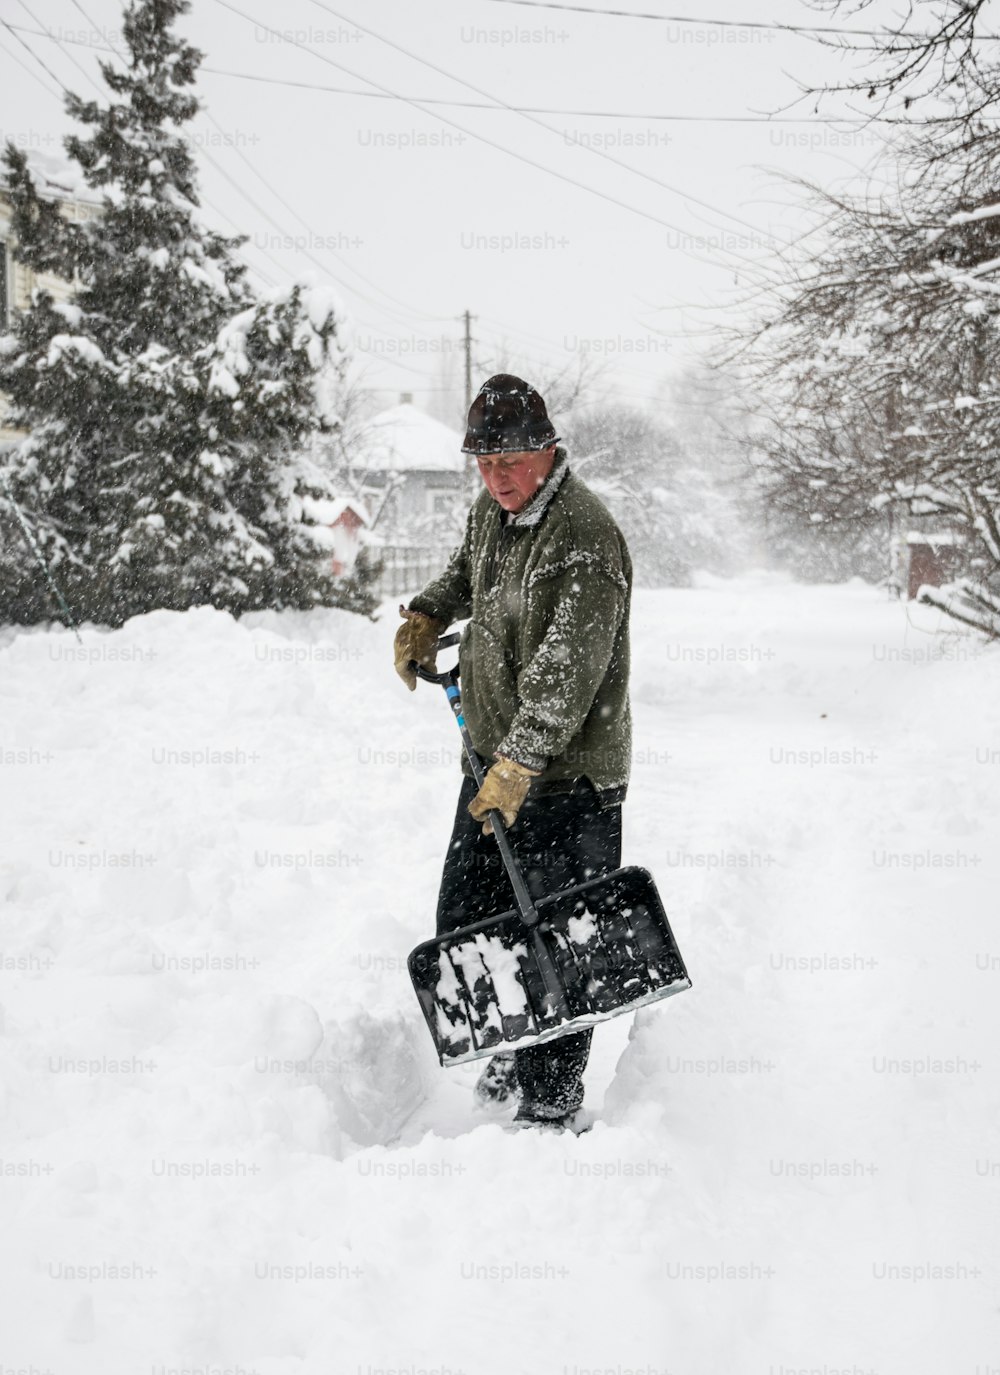 Sgombero neve invernale. Un uomo con una pala libera il cortile e il vialetto dalla neve durante una forte nevicata